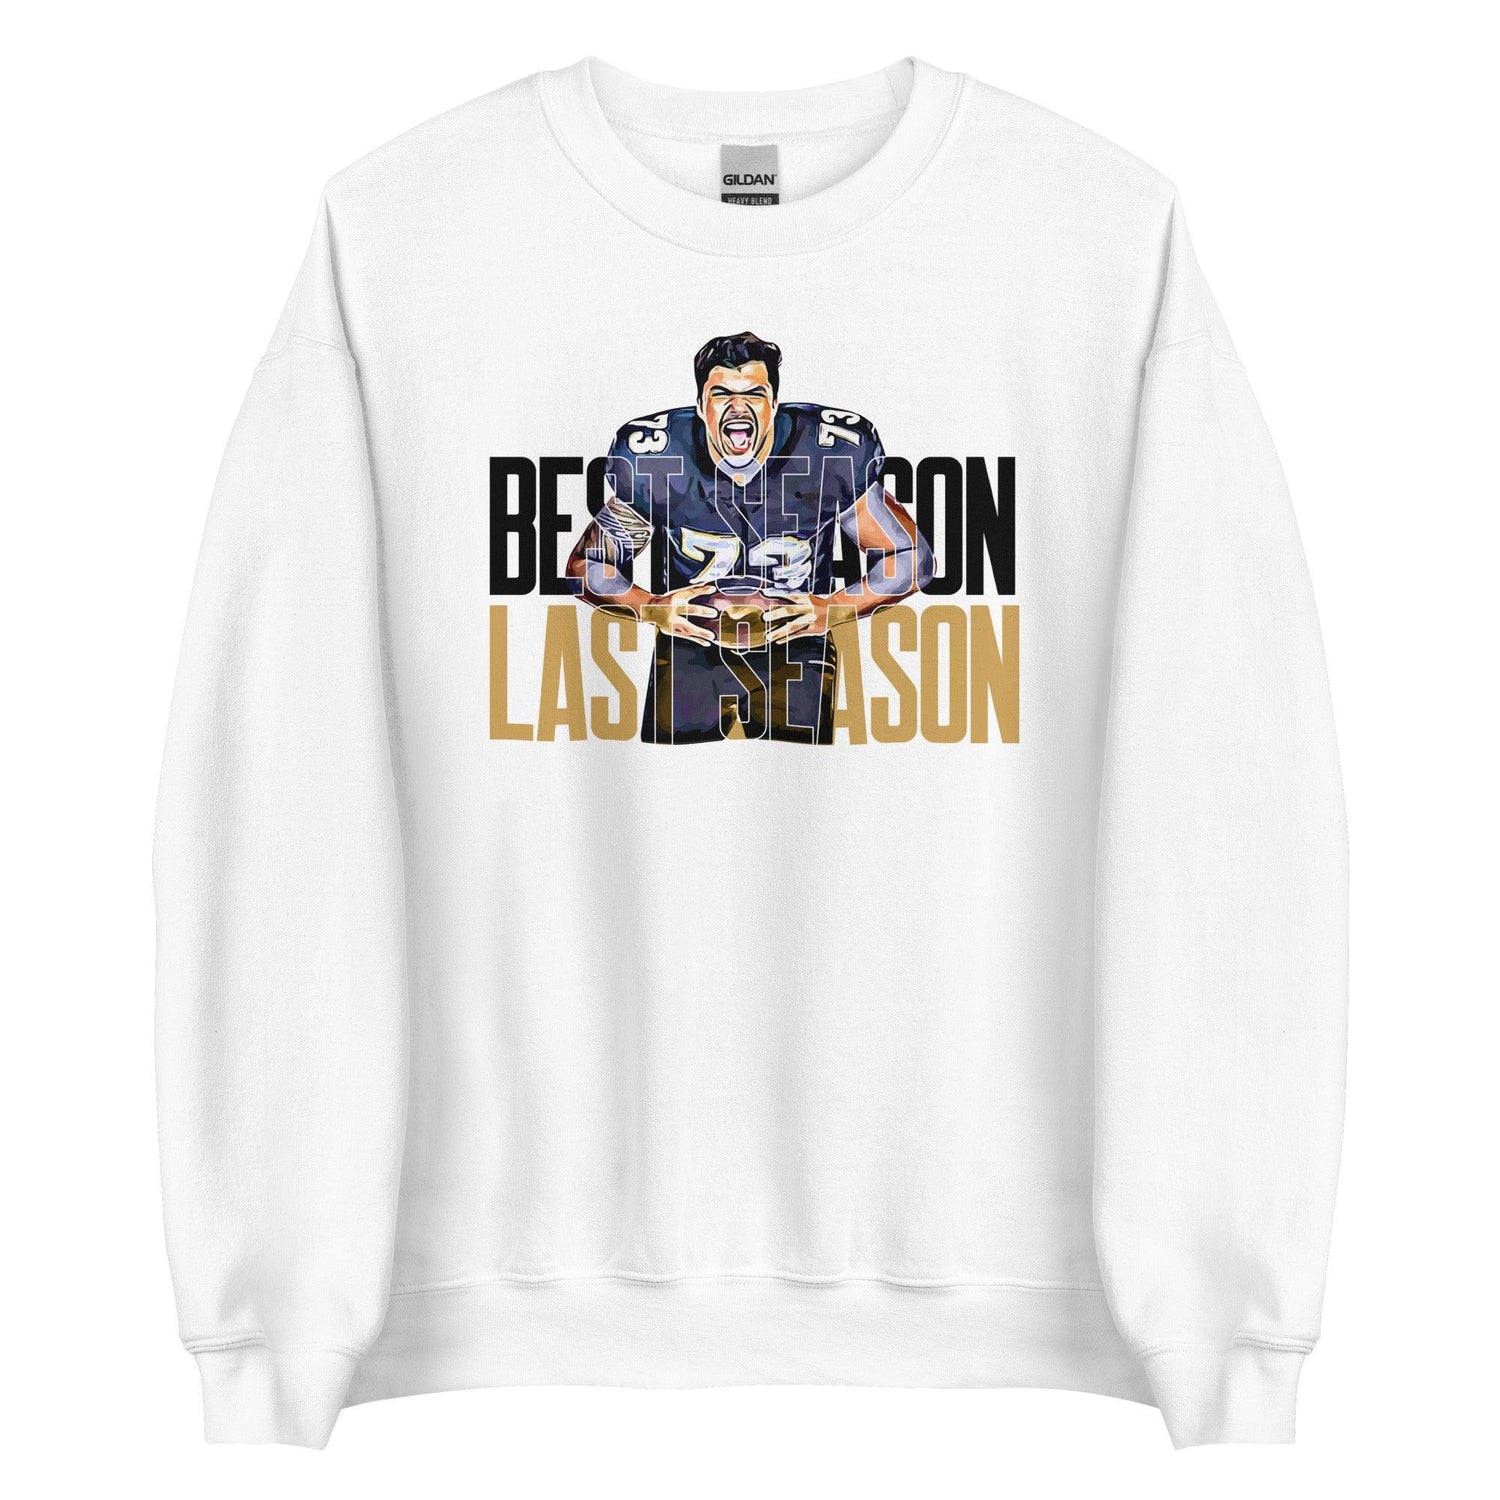 Sam Jackson "BEST SEASON" Sweatshirt - Fan Arch